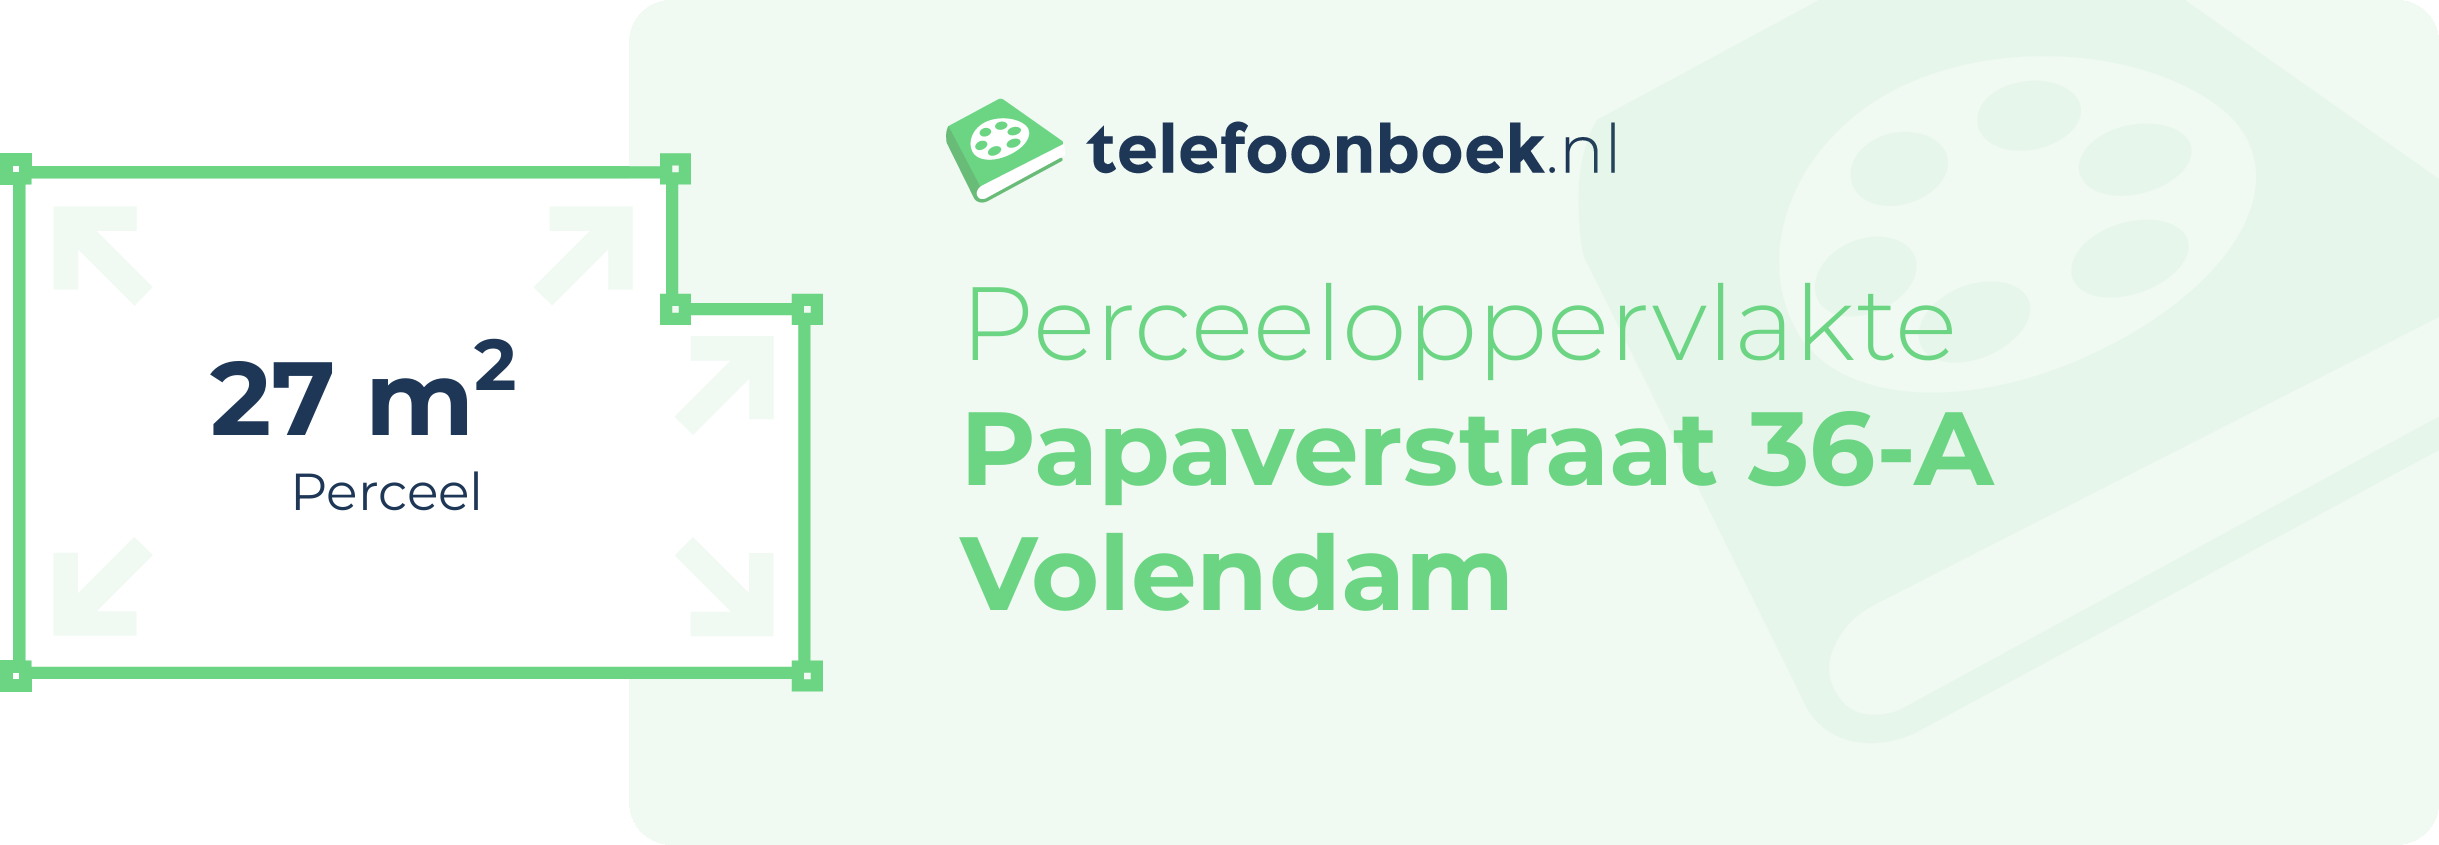 Perceeloppervlakte Papaverstraat 36-A Volendam